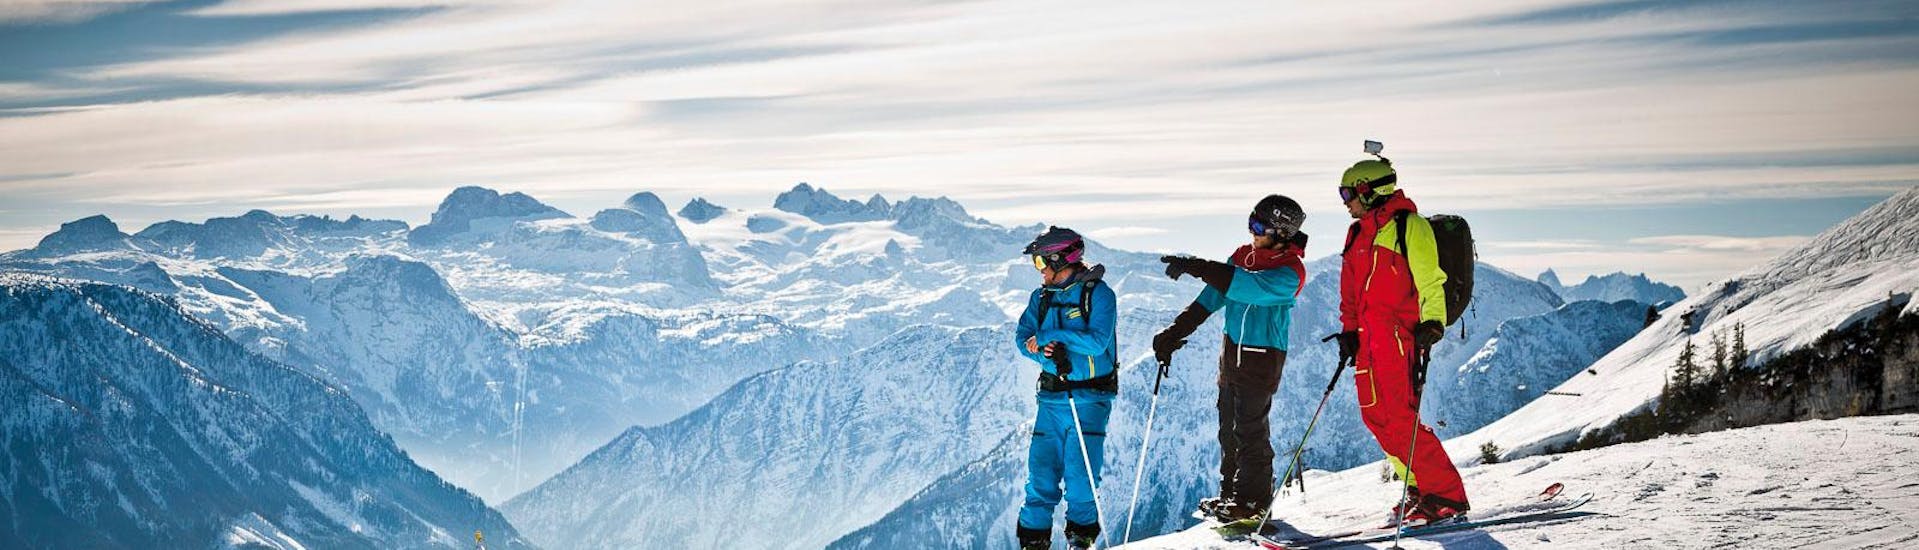 Lezioni private di sci per adulti per tutti i livelli con Snow & Mountain Sports Loitzl Loser.